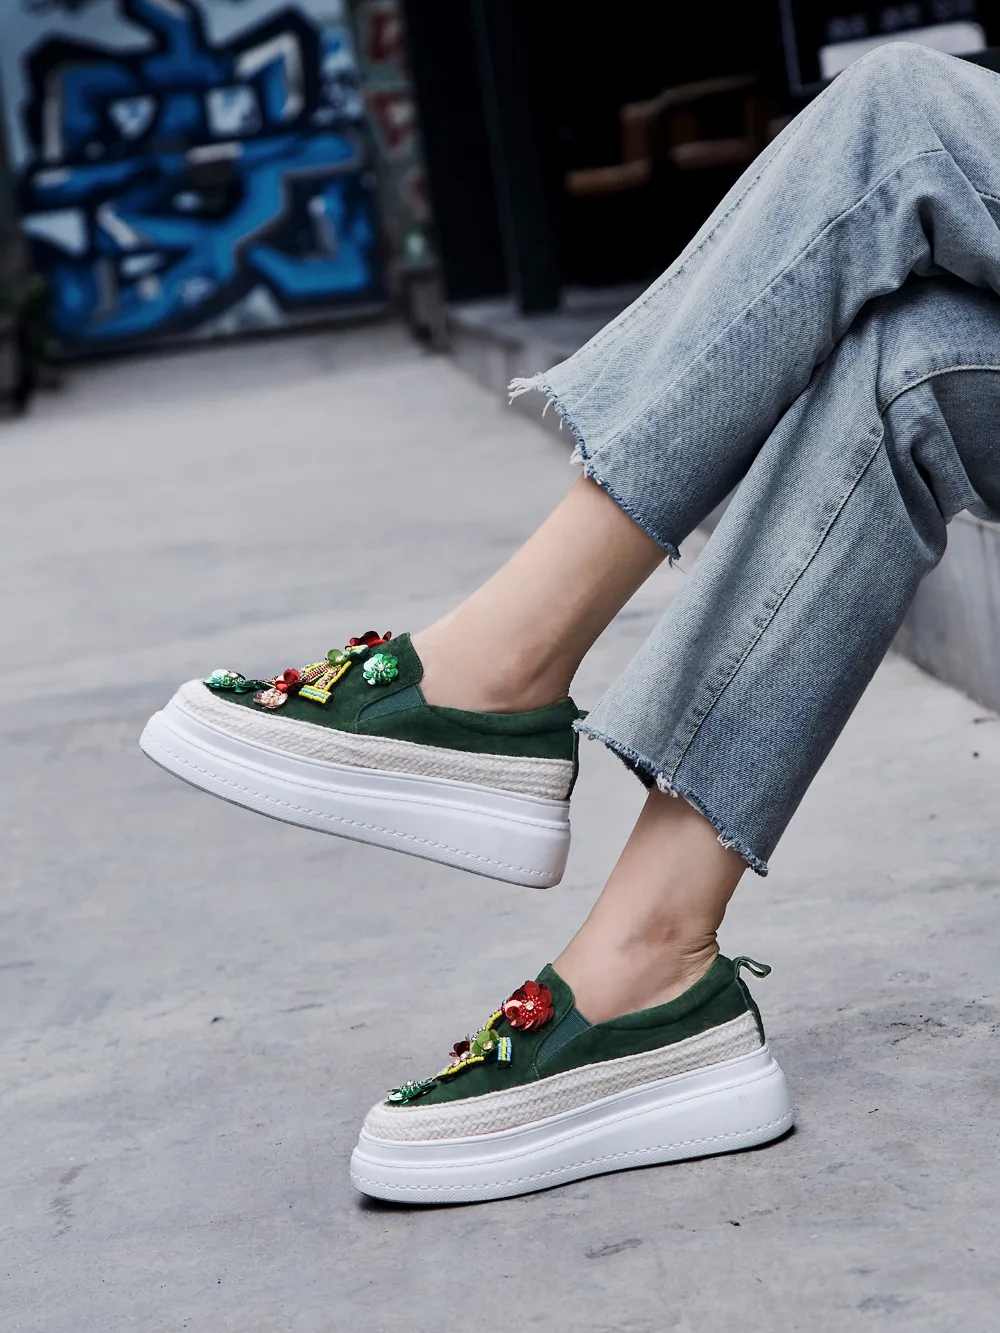 Кроссовки Женские Сникеры на платформе кожаные лоферы Черный Зеленый Bling повседневная обувь для женщин 5,5 см